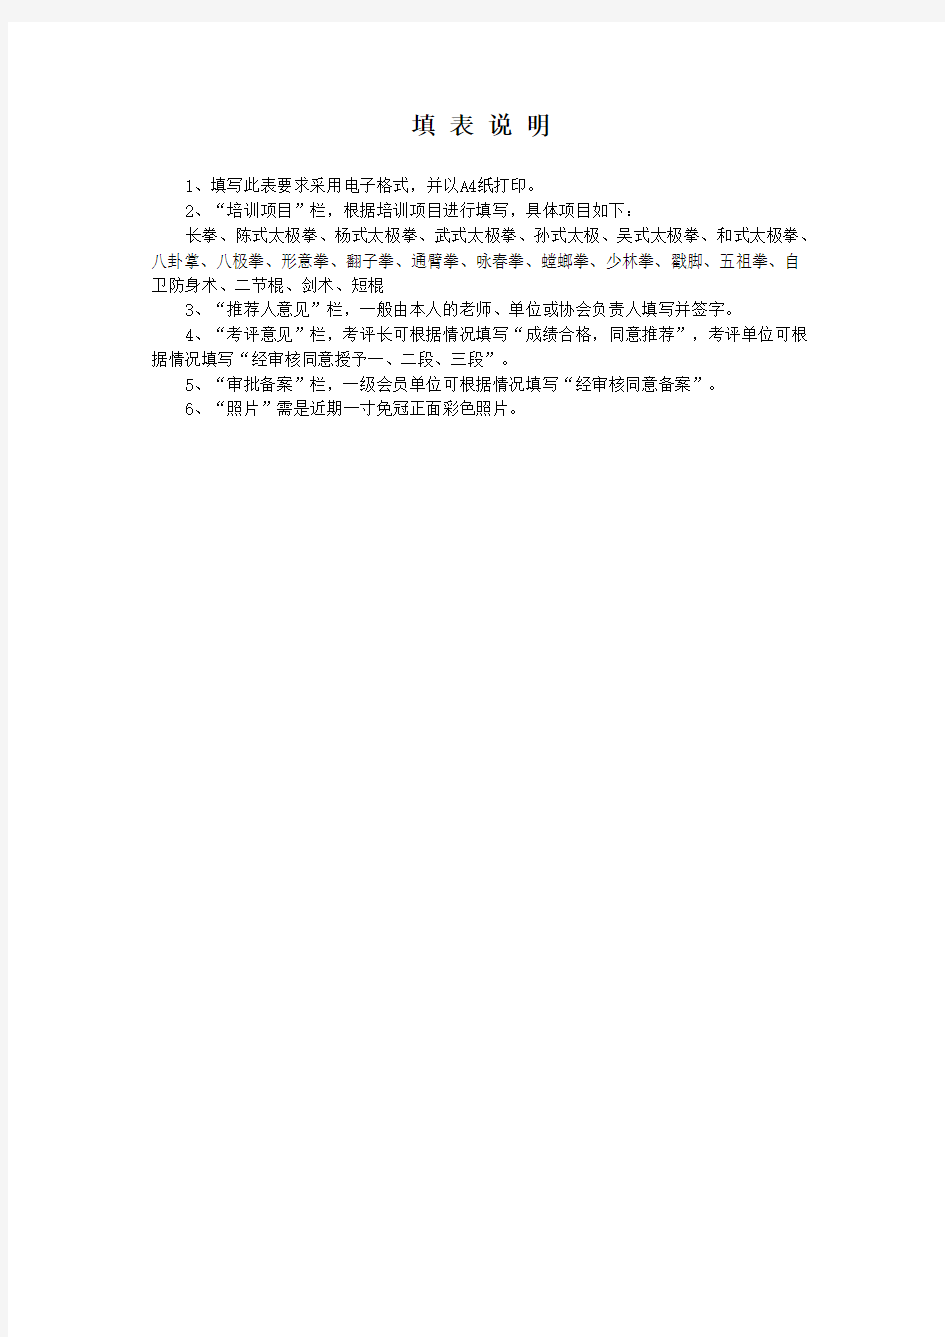 《中国武术段位制》1-3段申报表